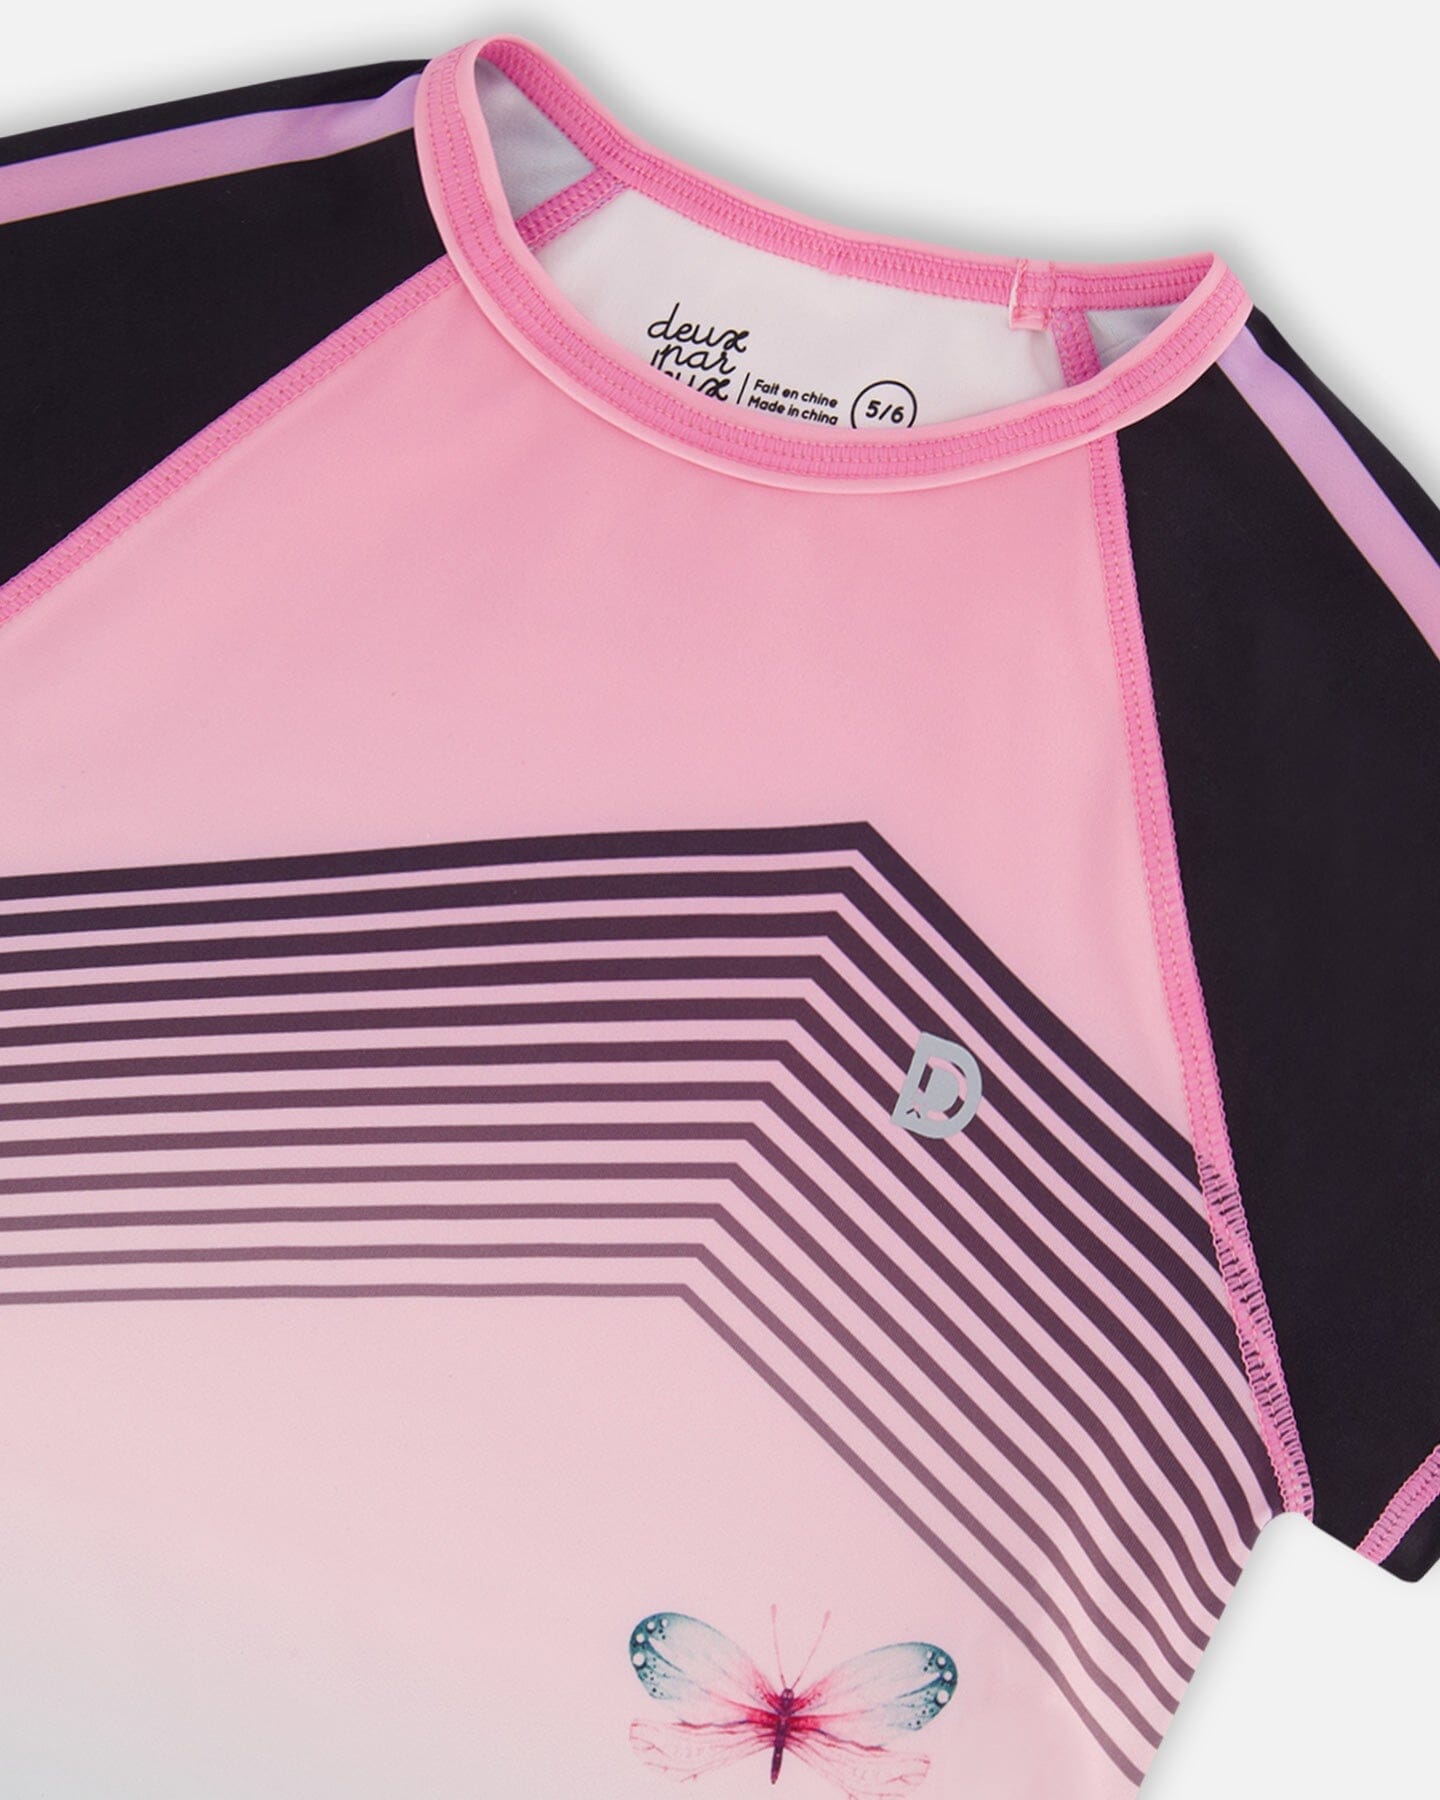 Short Sleeve Athletic Top Gradient Pink Printed Big Flowers - F30XG71_605